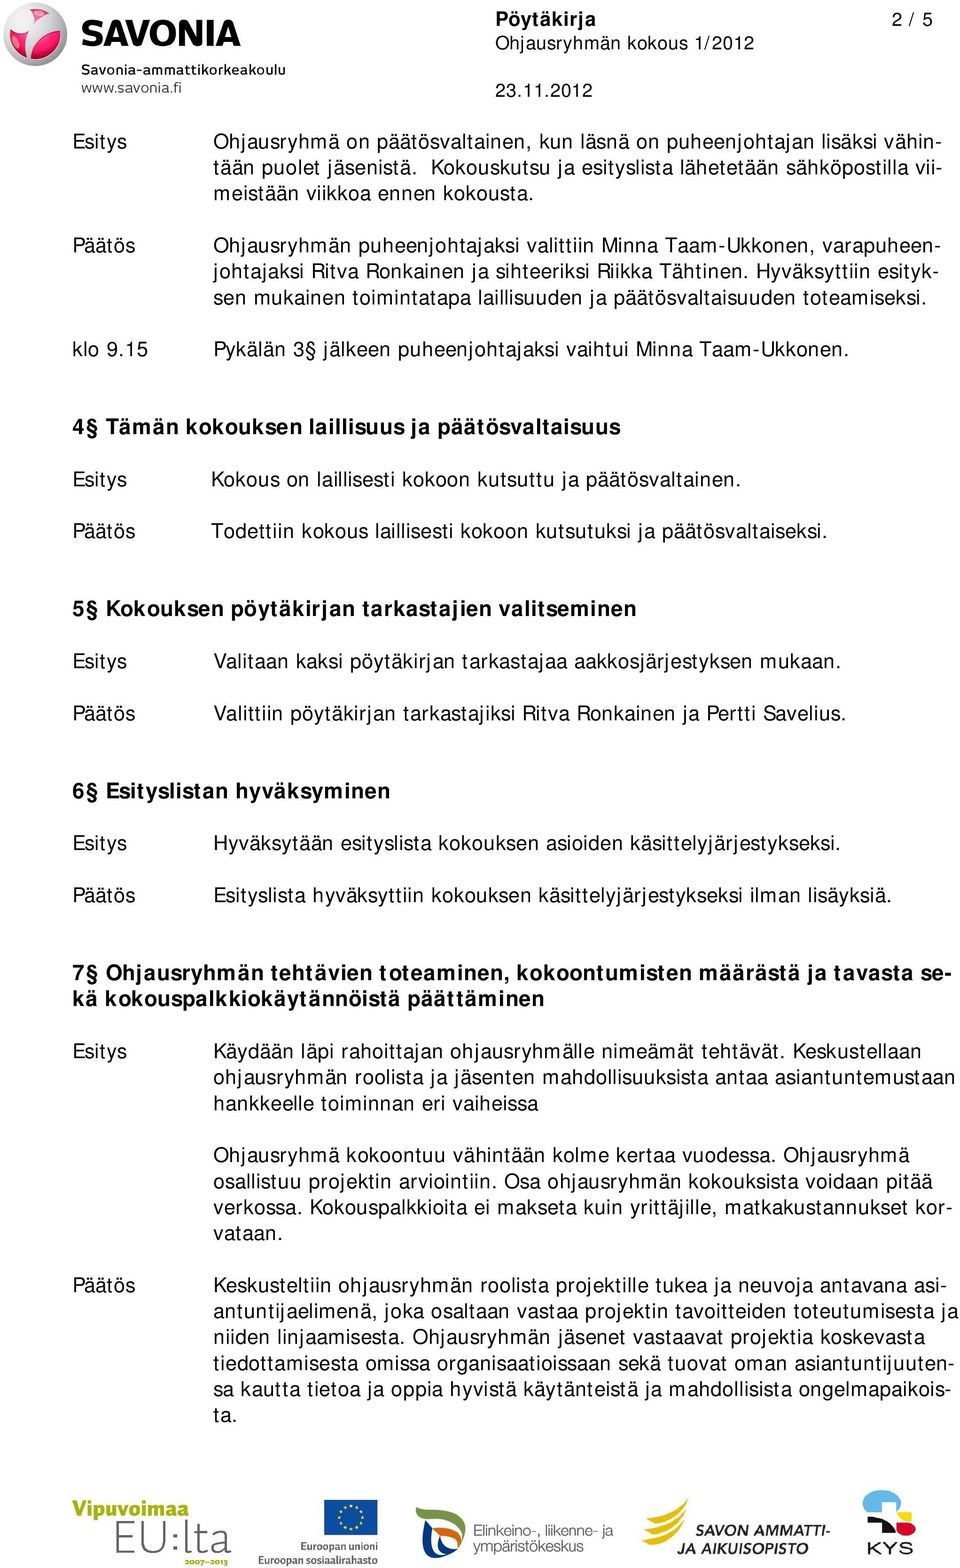 Ohjausryhmän puheenjohtajaksi valittiin Minna Taam-Ukkonen, varapuheenjohtajaksi Ritva Ronkainen ja sihteeriksi Riikka Tähtinen.